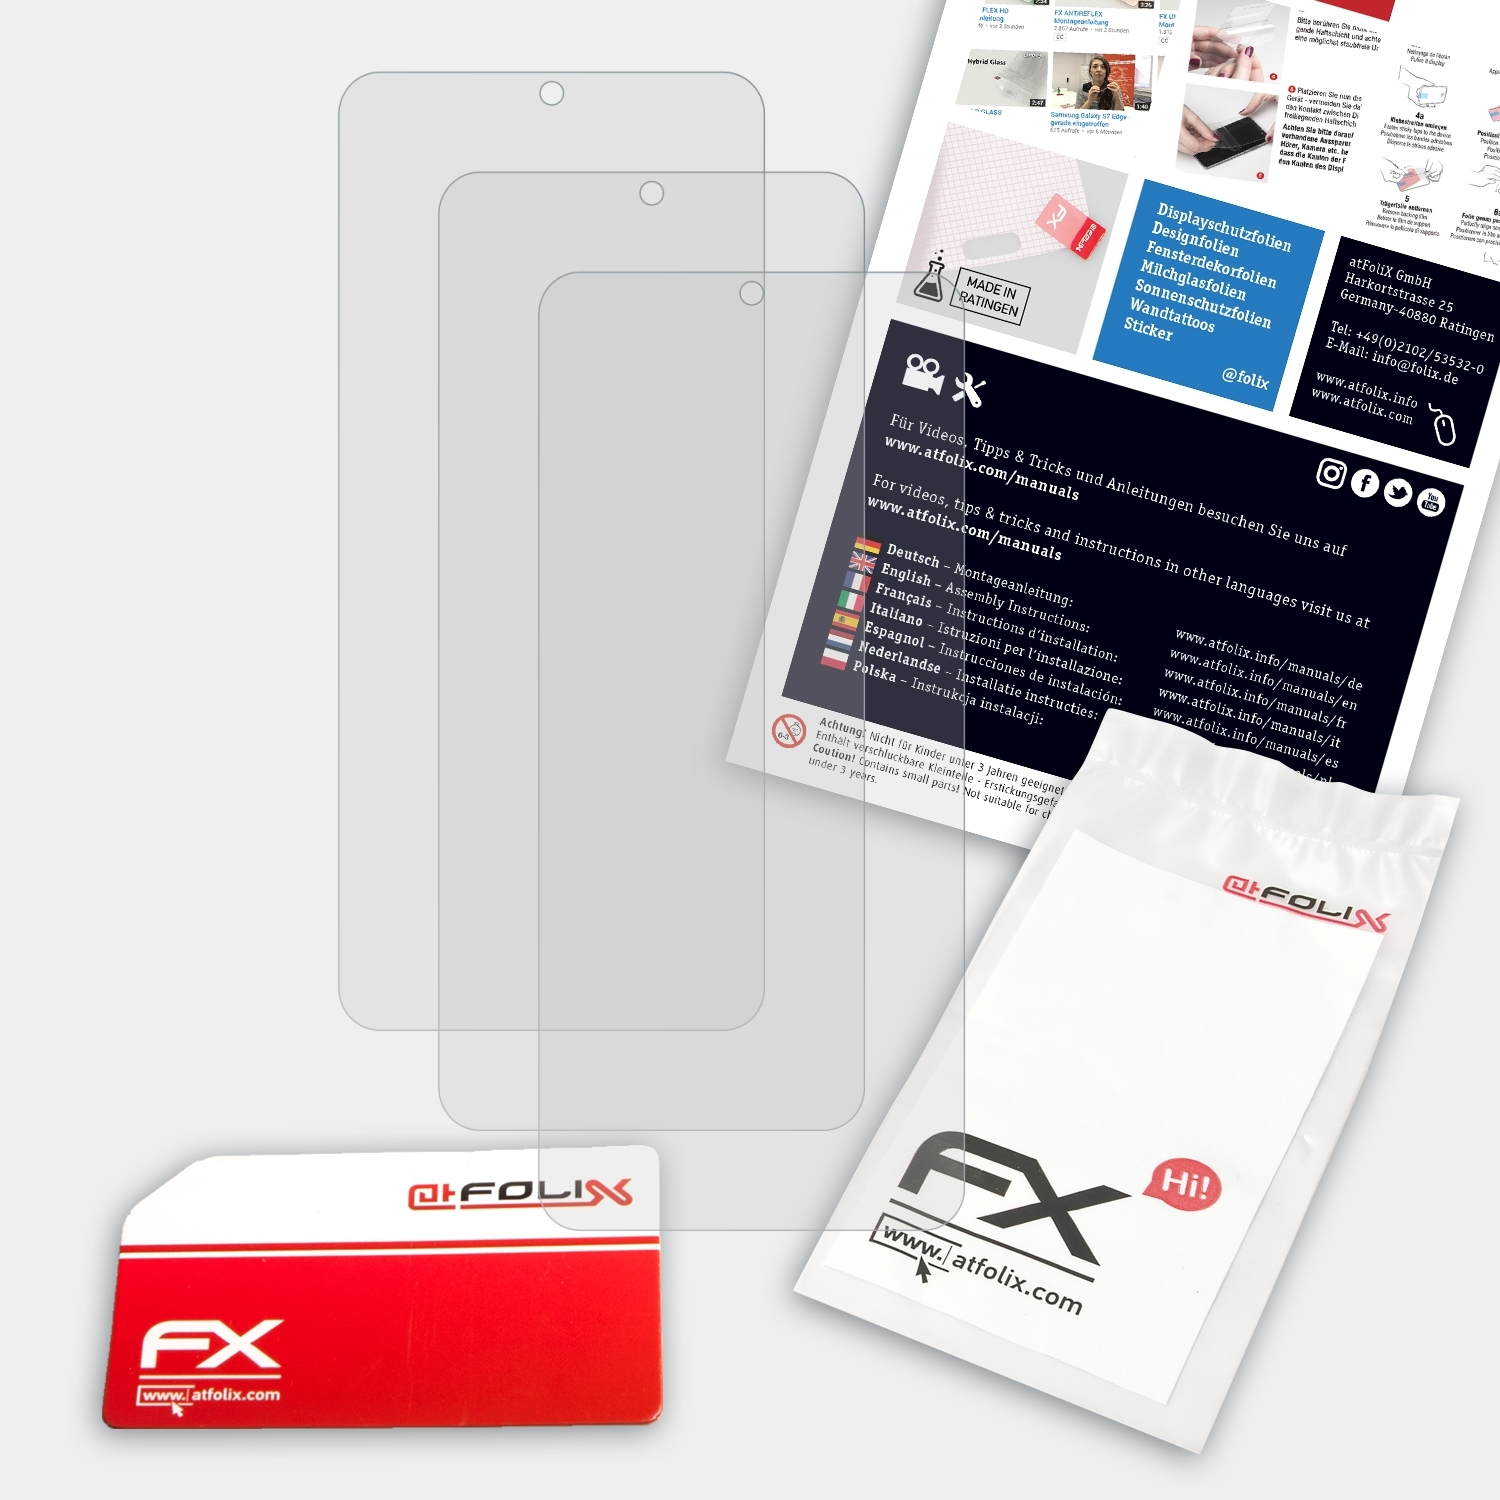 ATFOLIX 3x Shark Pro) Xiaomi Displayschutz(für Black 4 FX-Antireflex